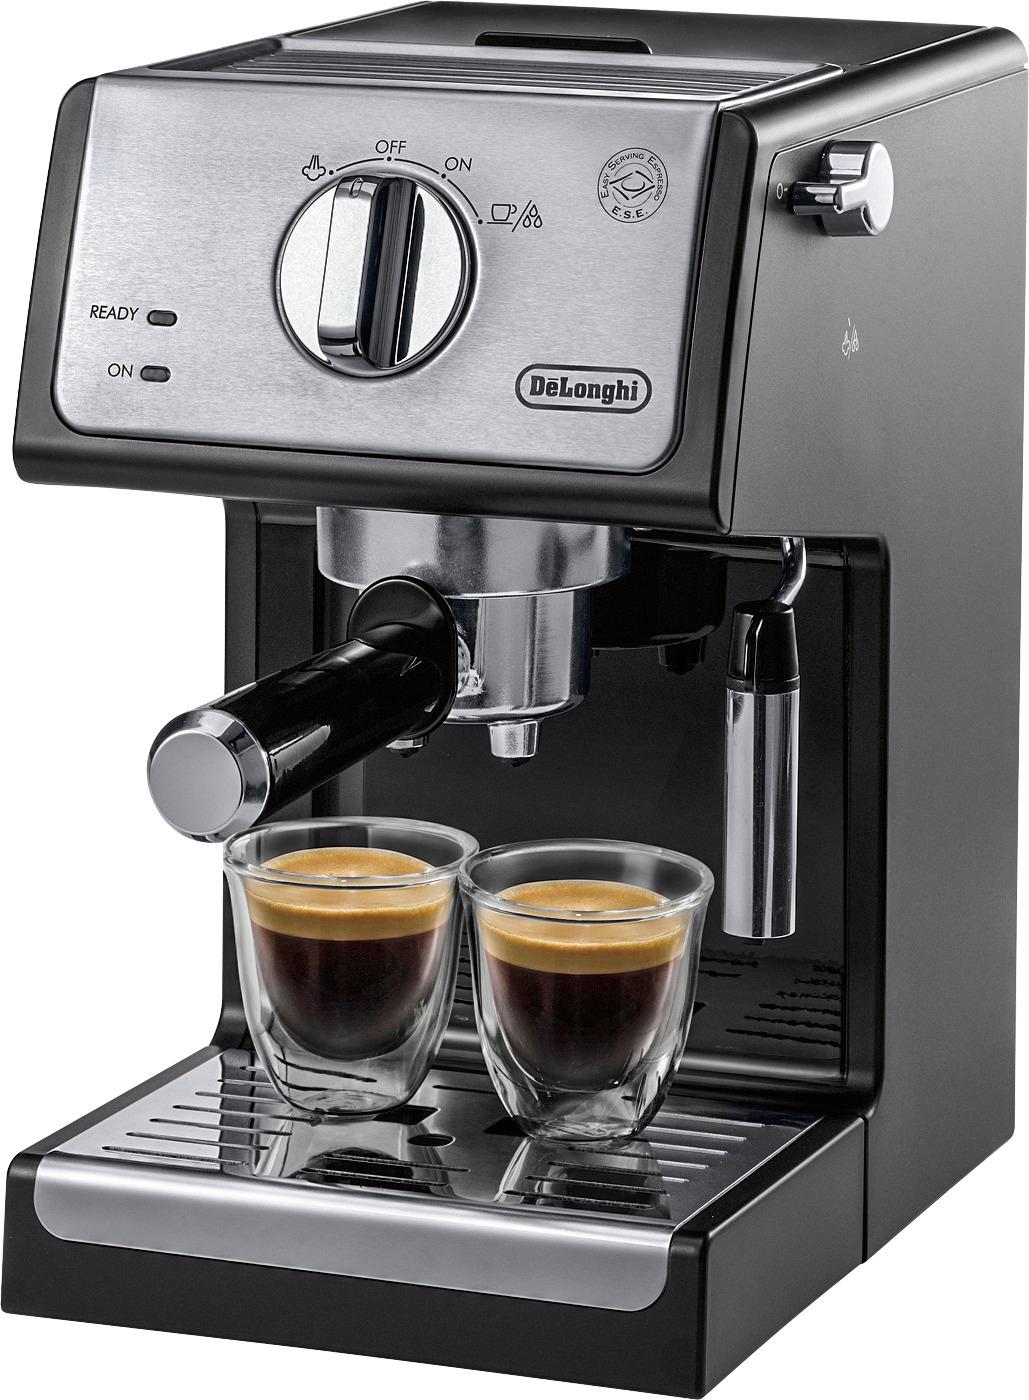 DeLonghi - Espresso Machine - Black